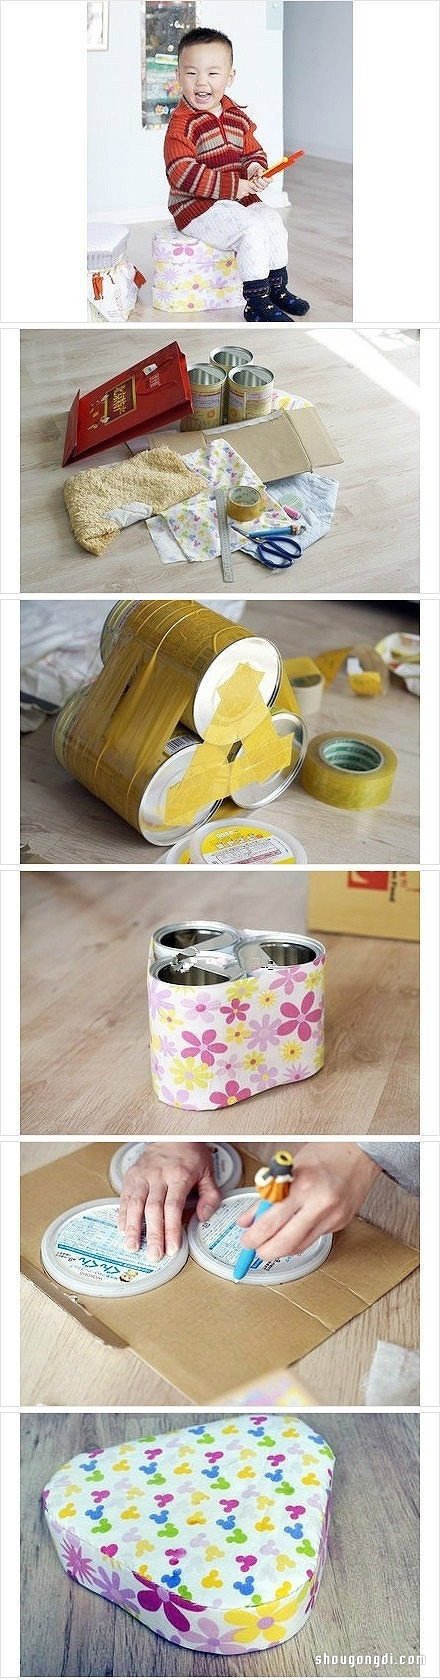 利用廢棄奶粉罐制作可愛的兒童凳子- www.shougongdi.com